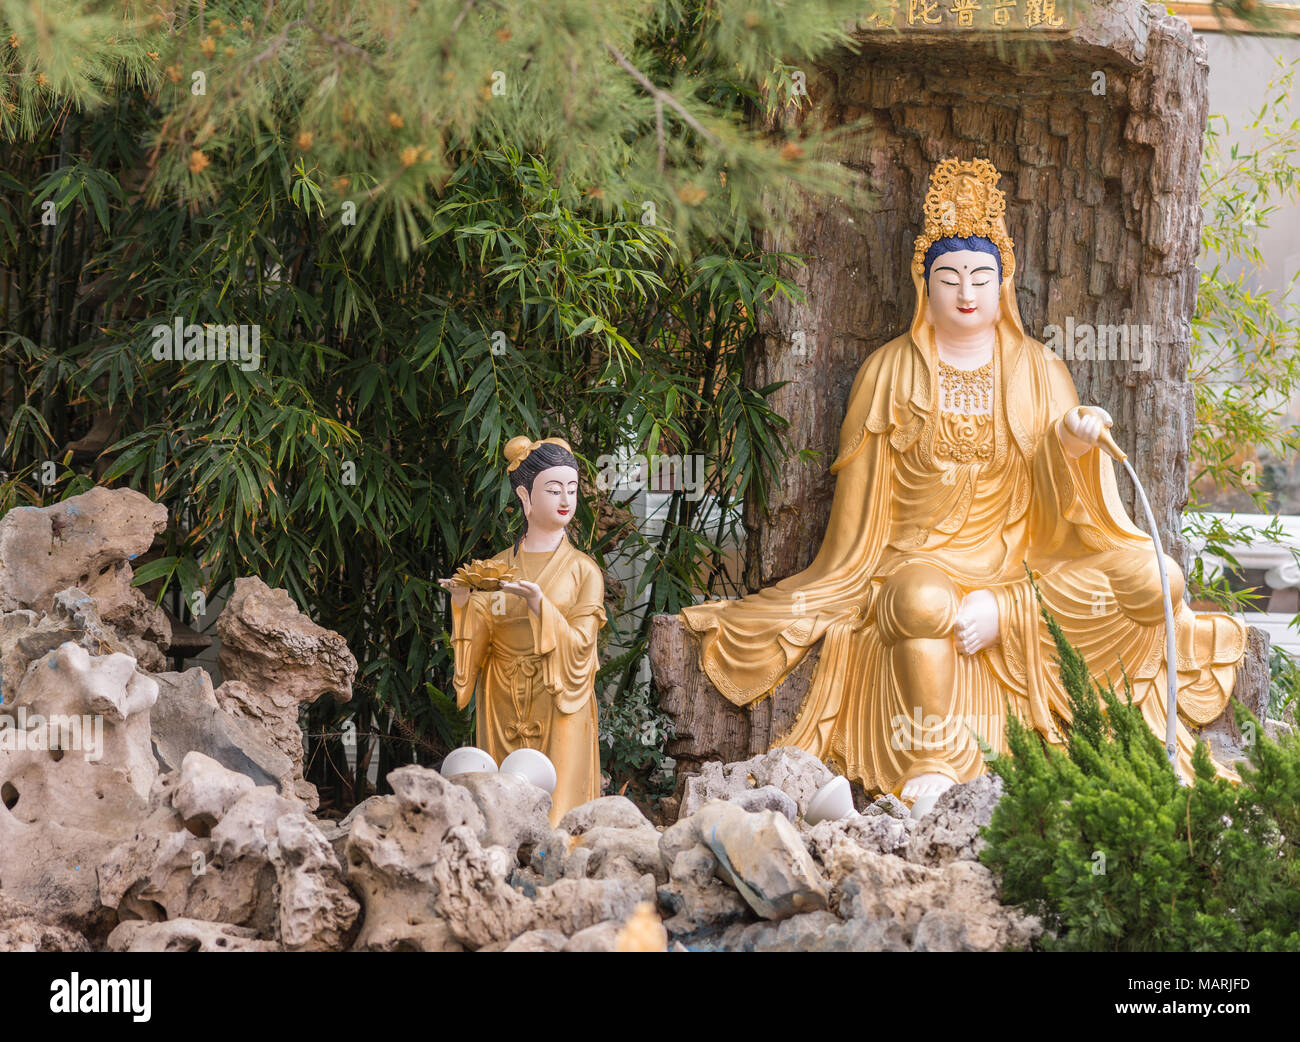 Hacienda Heights, CA, Stati Uniti d'America - 23 Marzo 2018: primo piano della golden Avalokitesvara, Guanyin, in giardino con quattro re celeste a Hsi Lai tempio buddista. Foto Stock